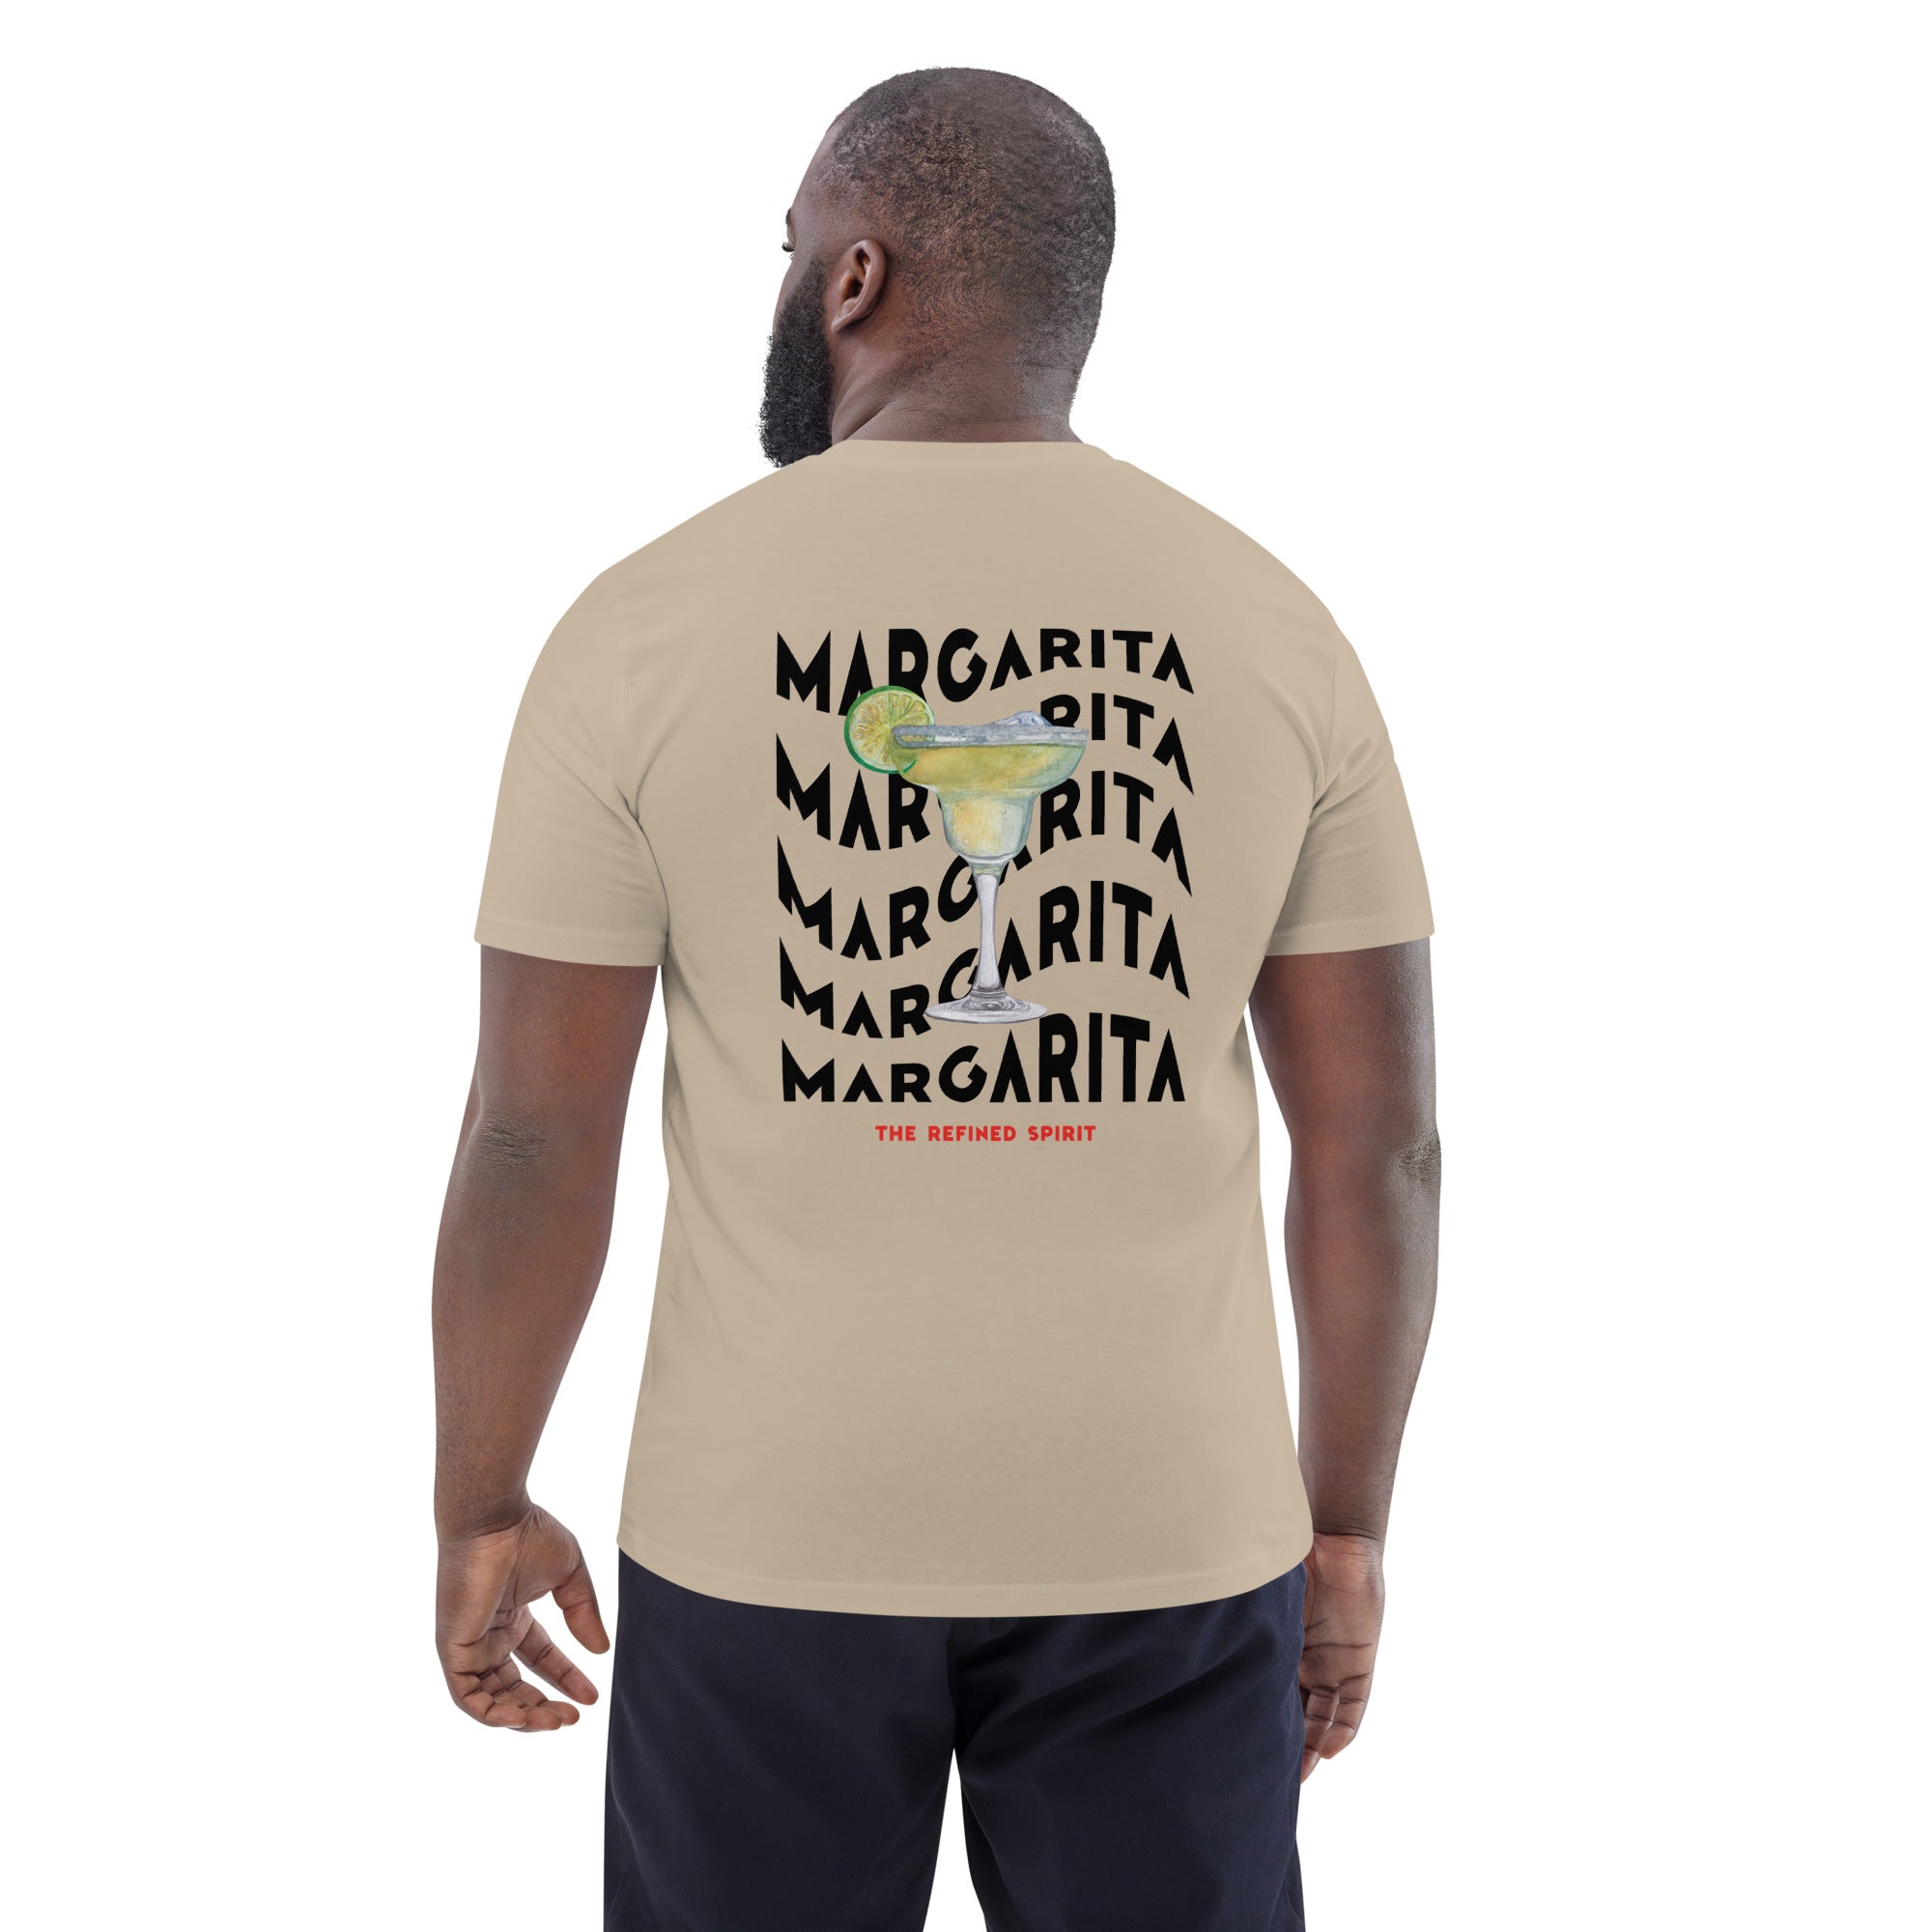 Waving Margarita - Organic T-shirt - The Refined Spirit